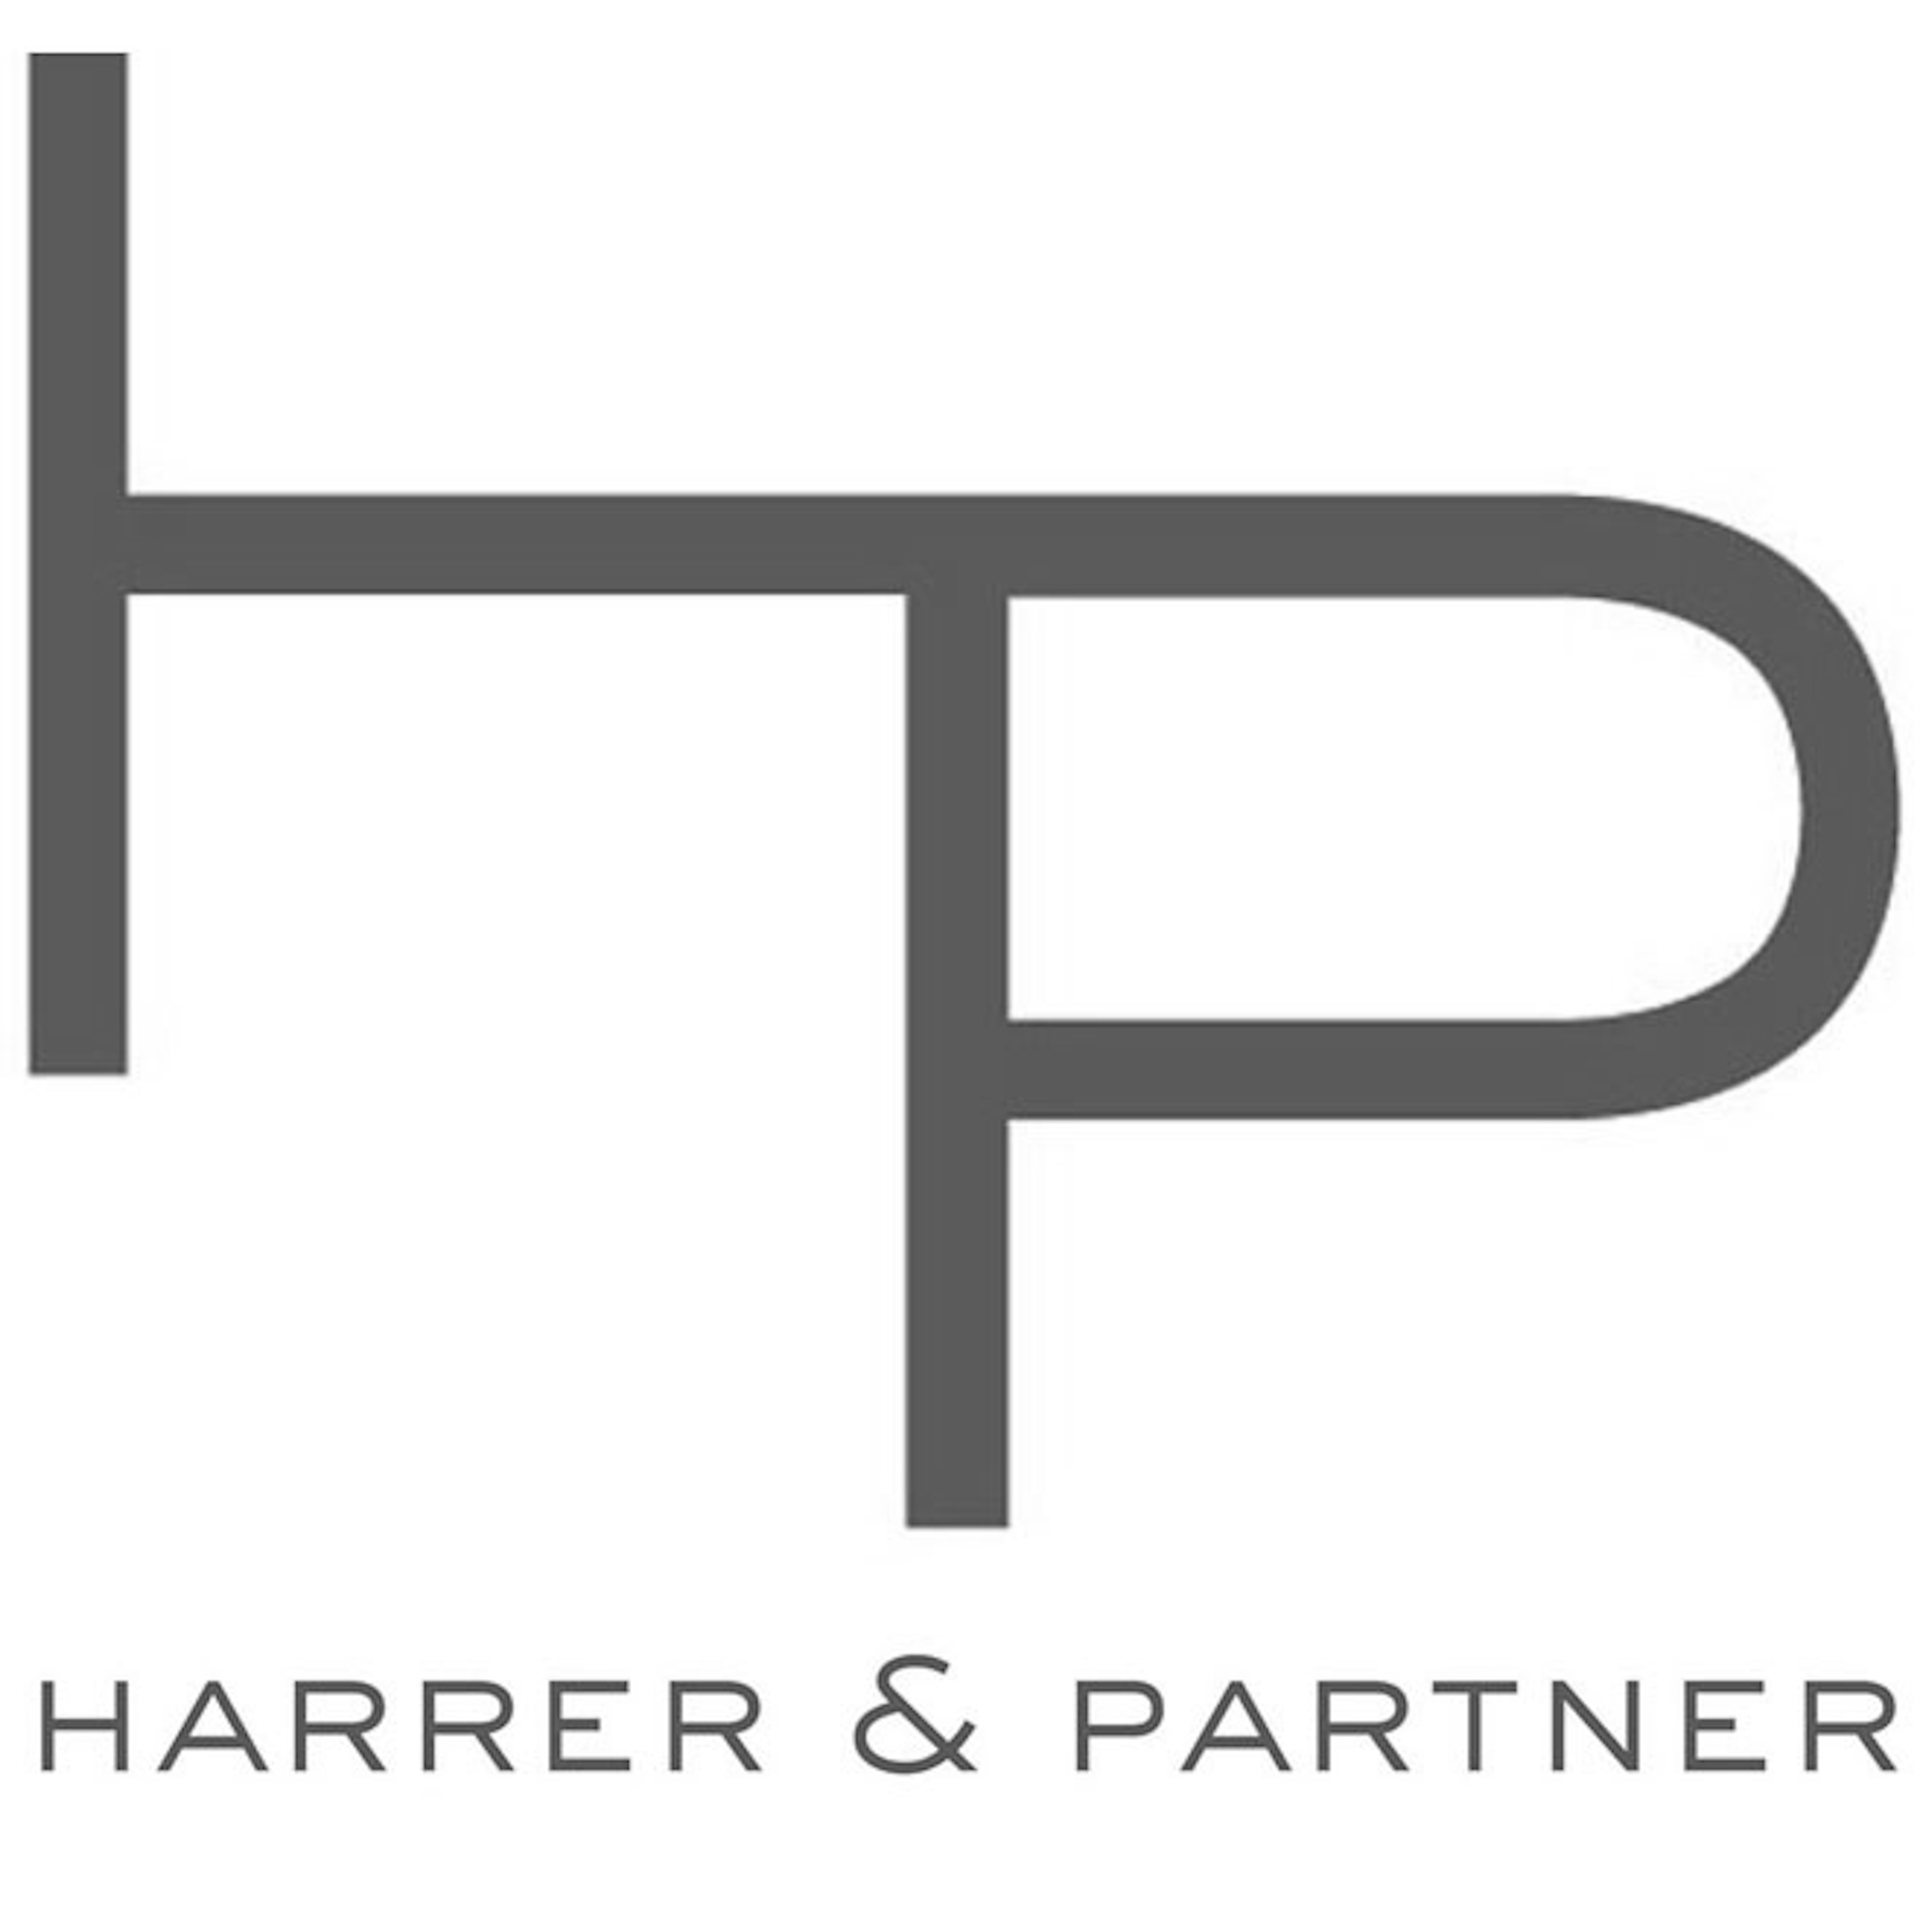 Harrer & Partner